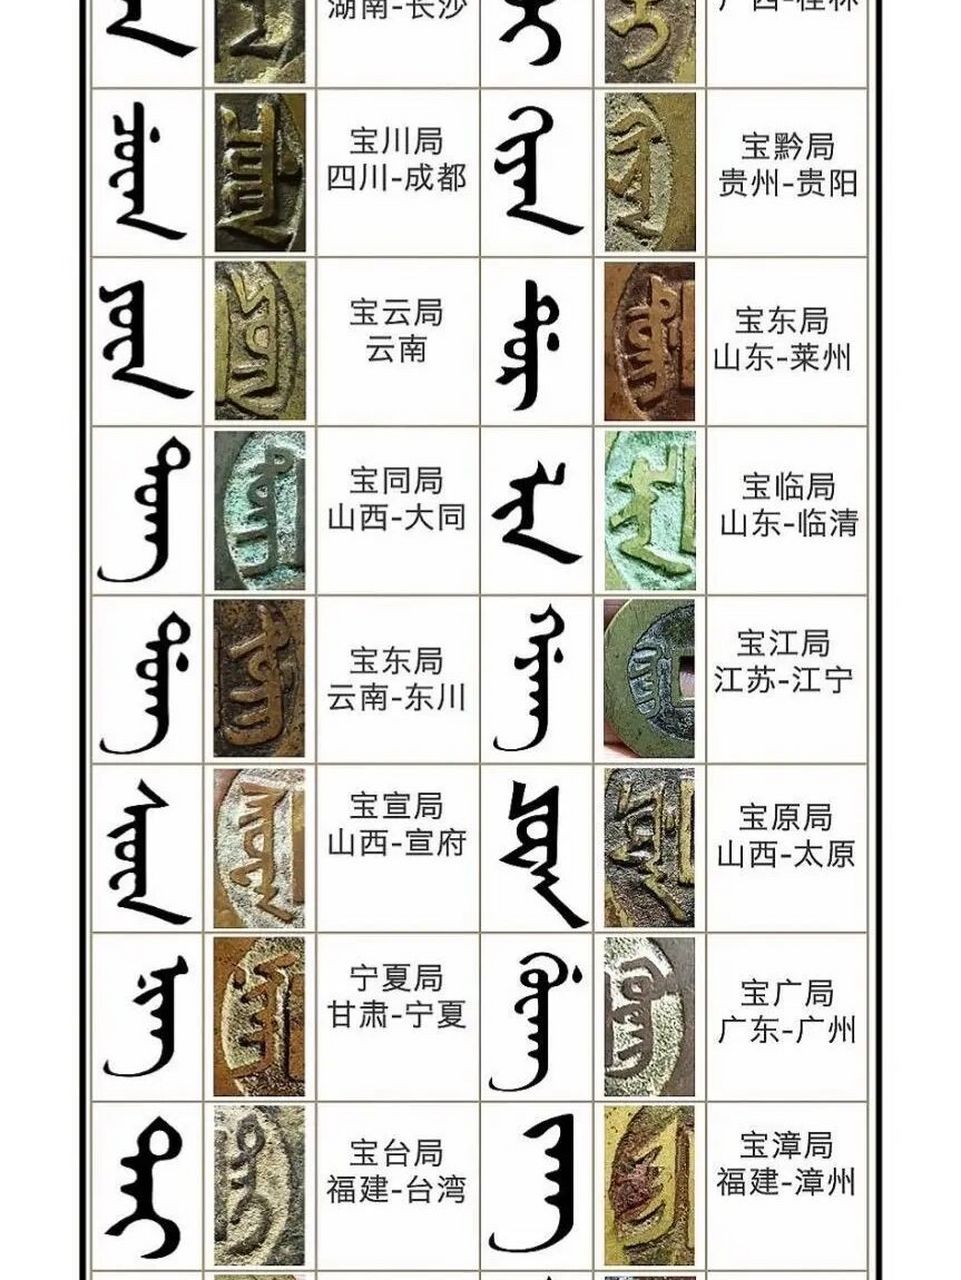 满汉文清钱币对照表图片